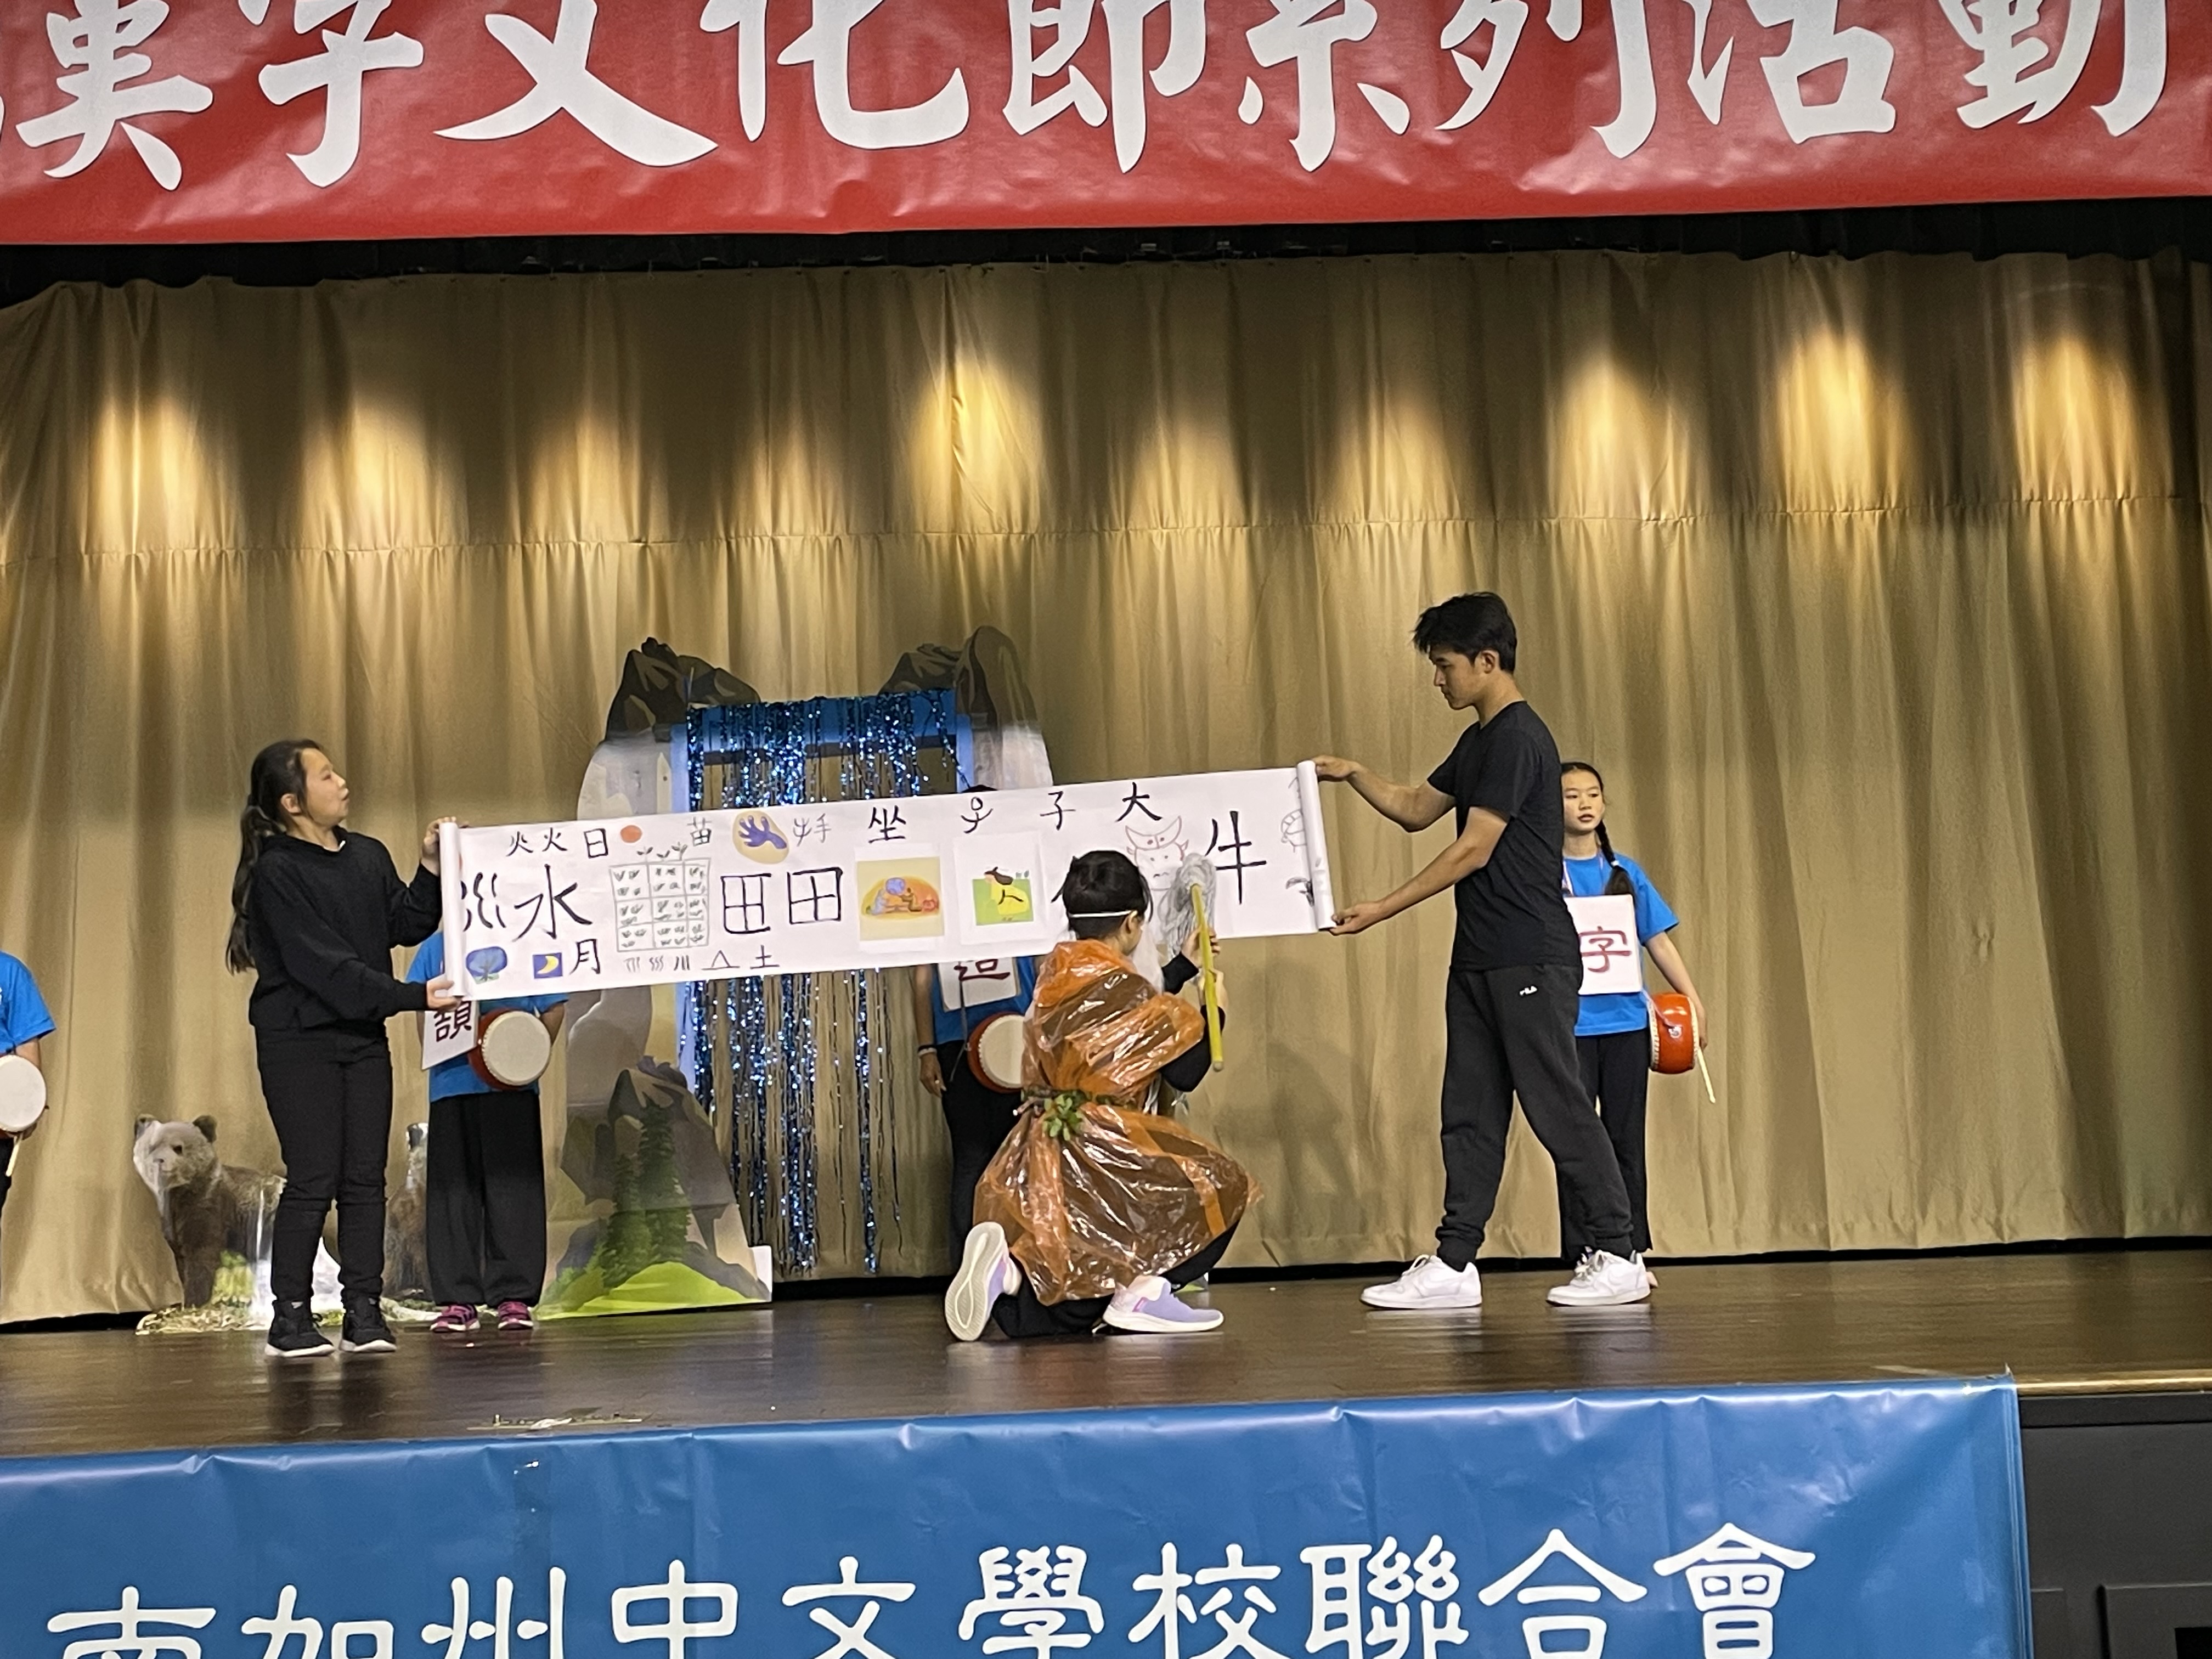 哈崗中文學校以戲劇方式講述倉頡造字的故事